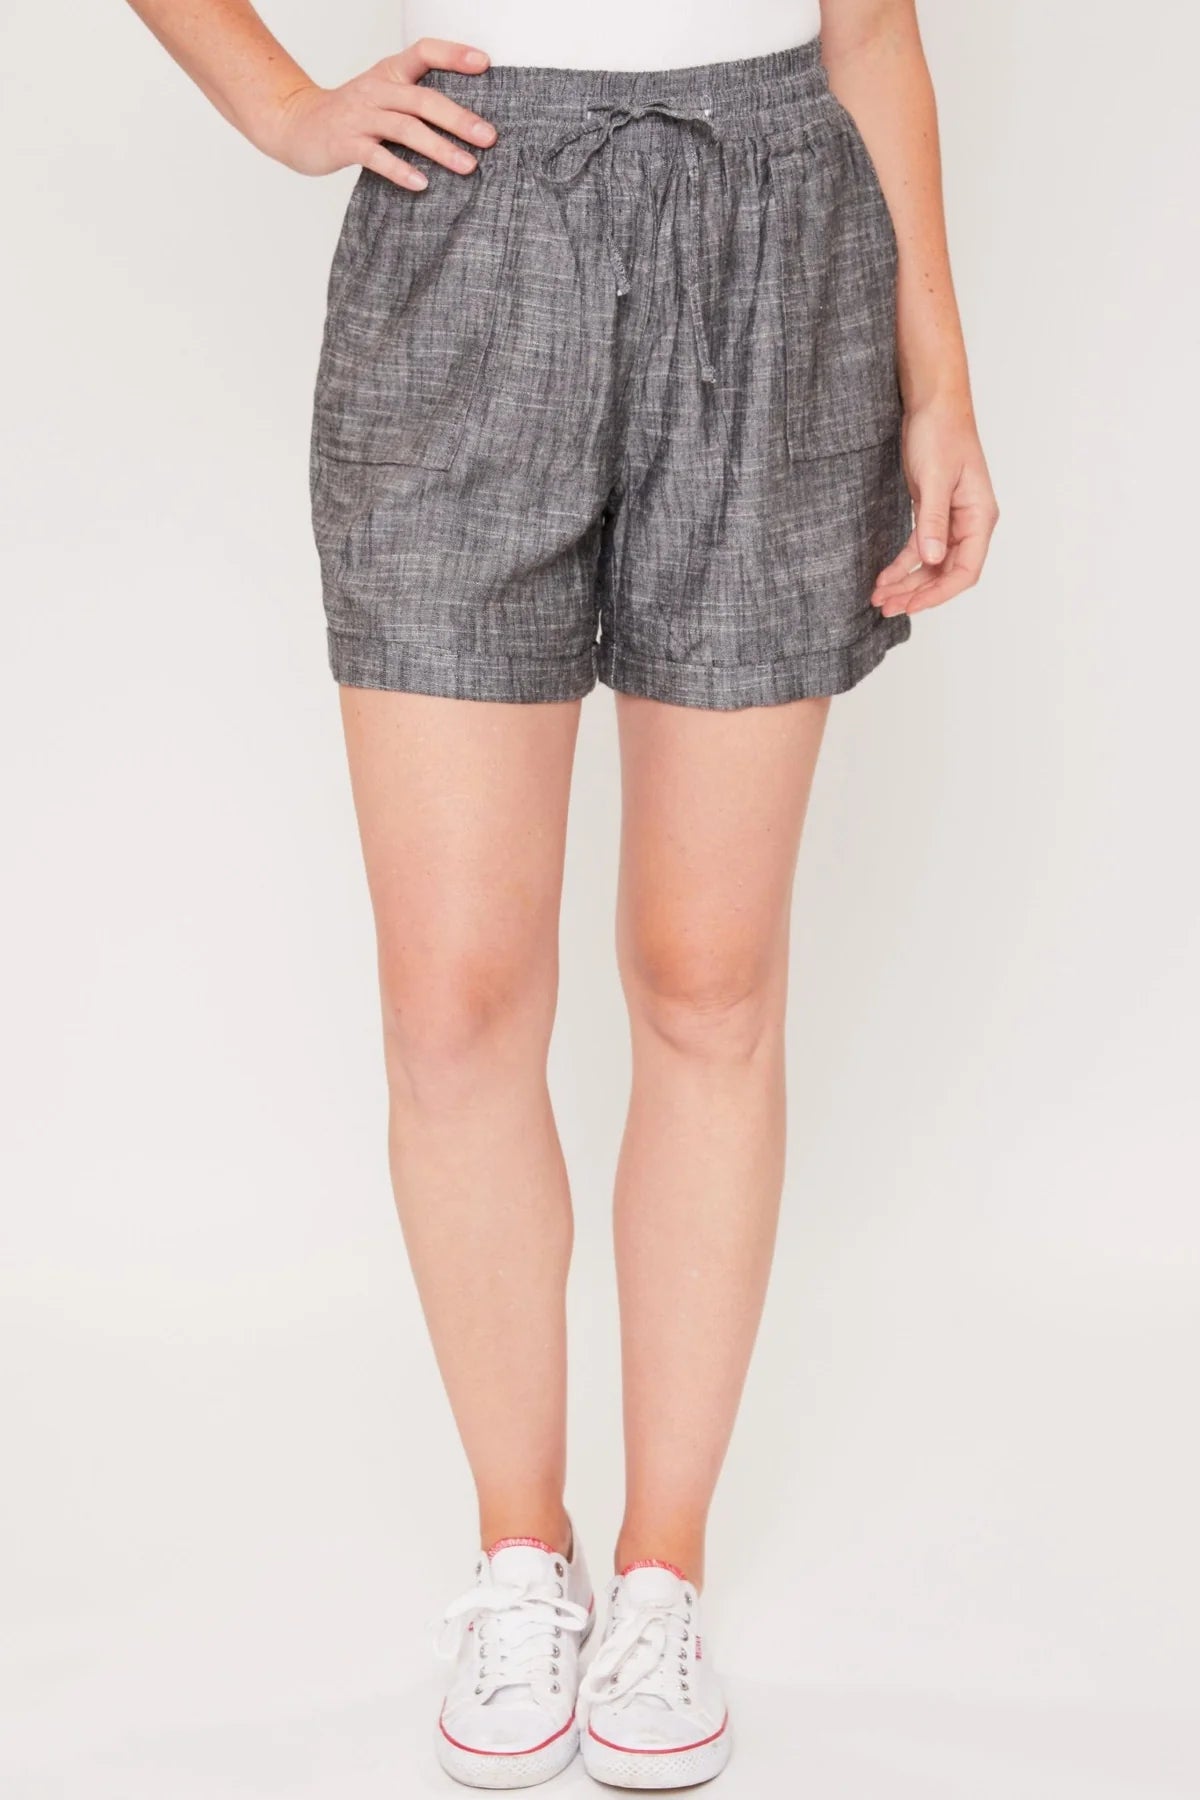 Callie Linen Shorts